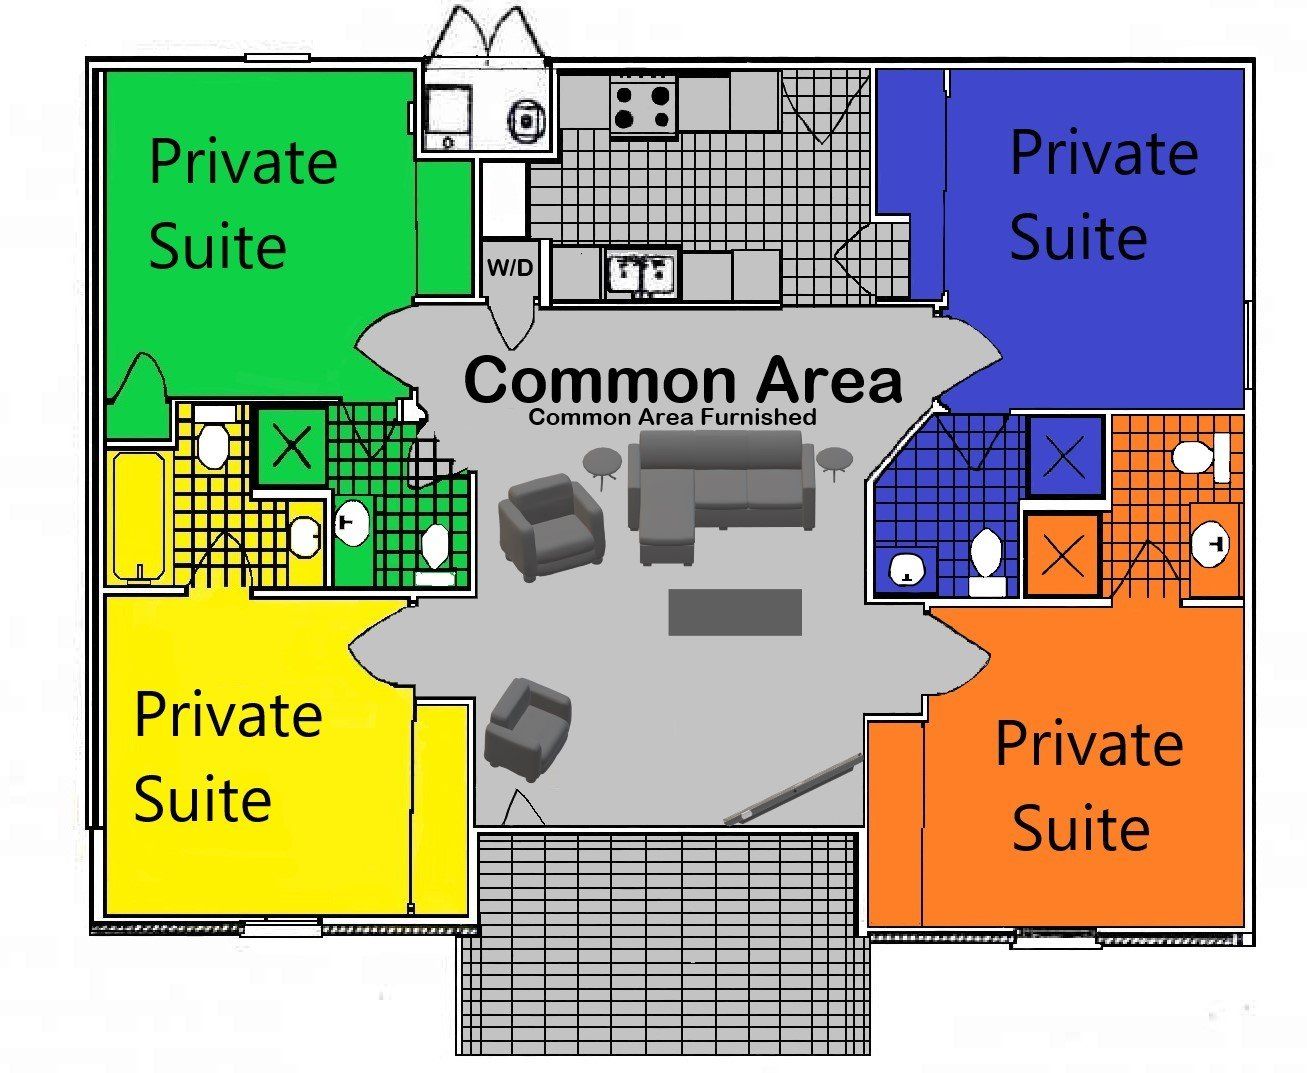 Private Suites